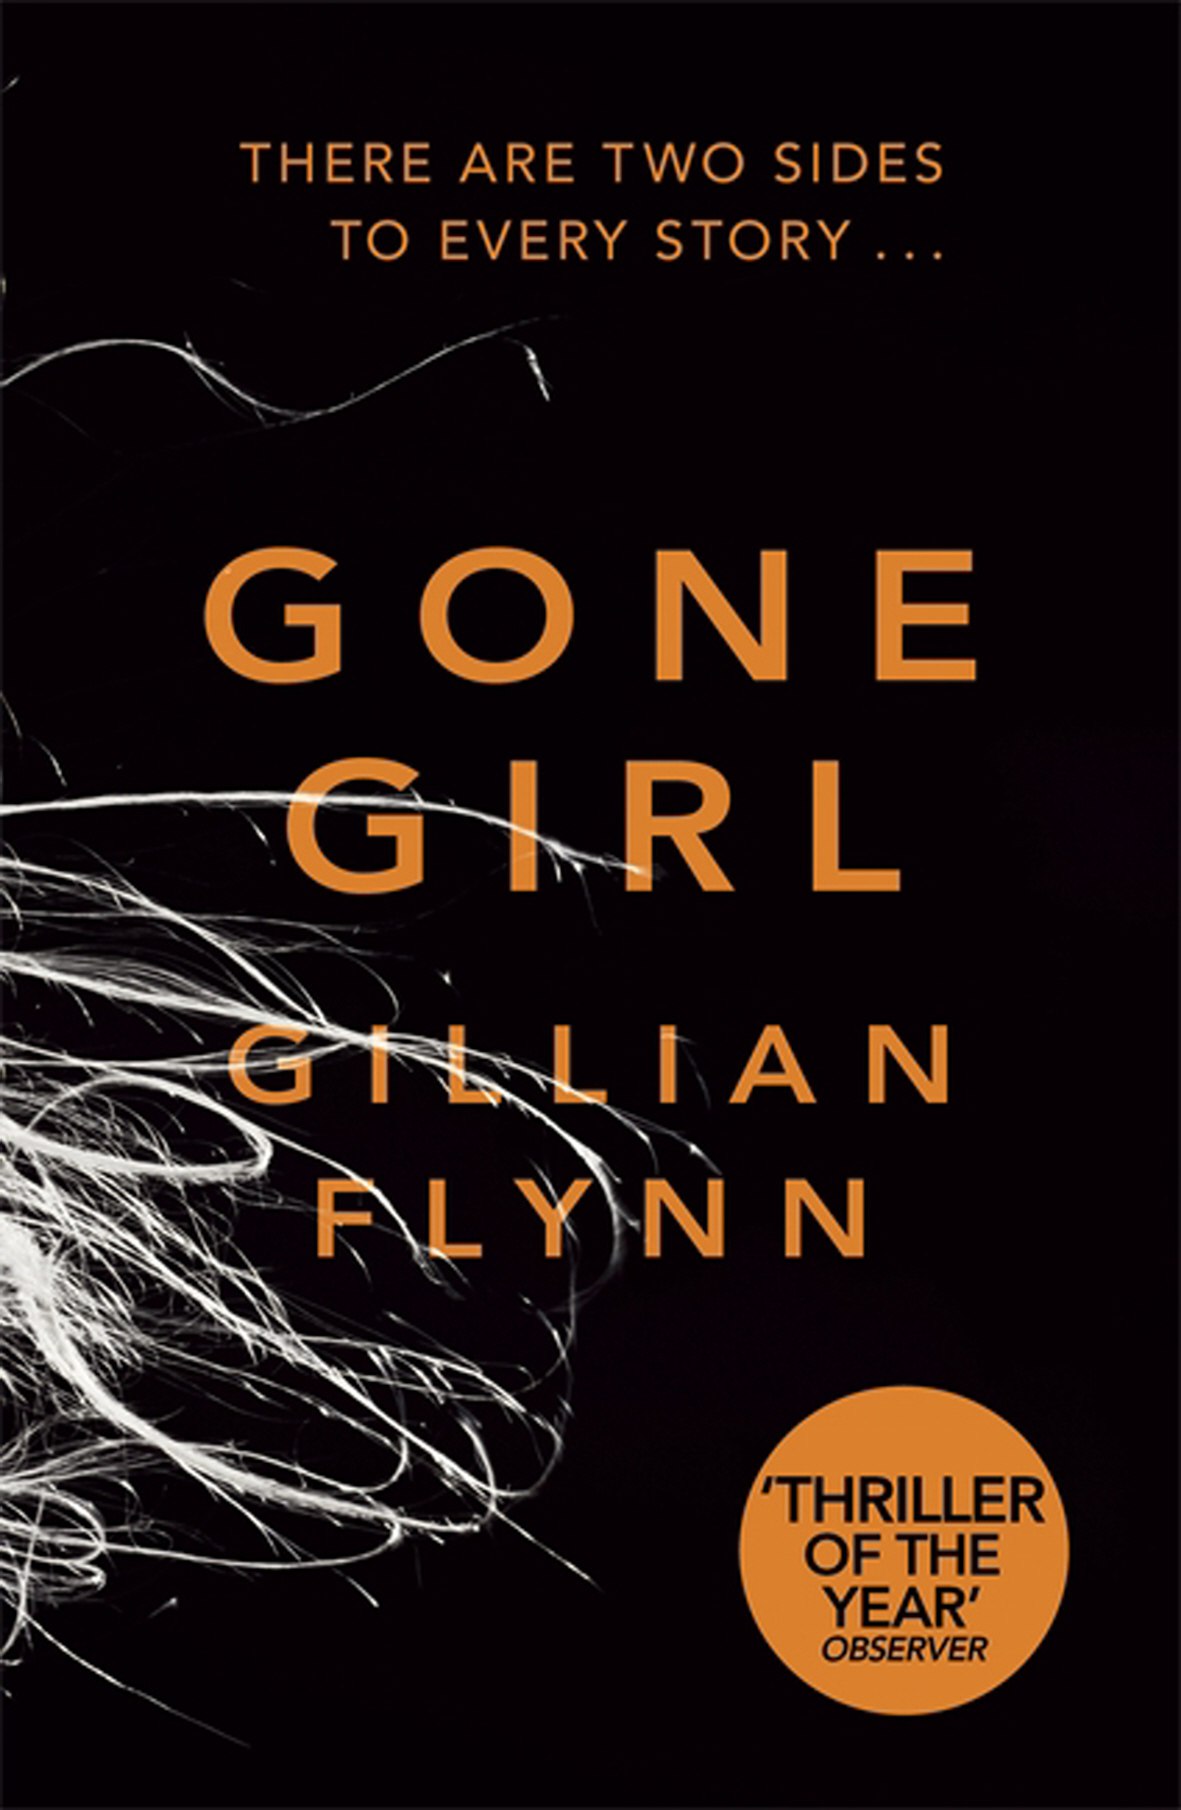 Gillian Flynn – Gone Girl